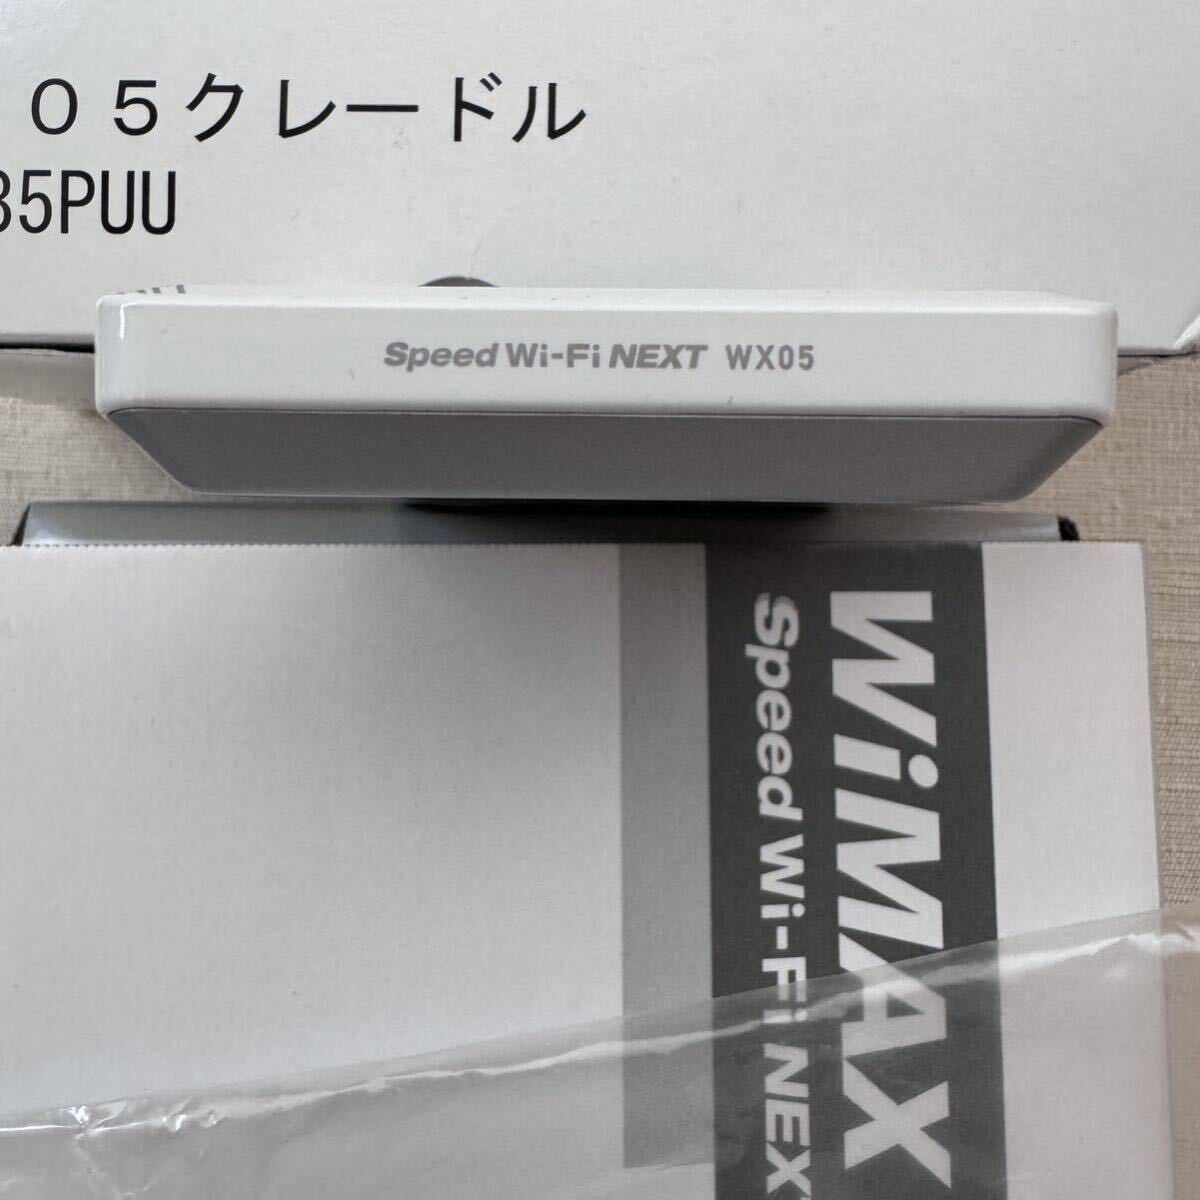 ポケットwifi UQmobile WX05 Speed wi-fi NEXT WIMAX2+ WX05 クレードル セット _画像2